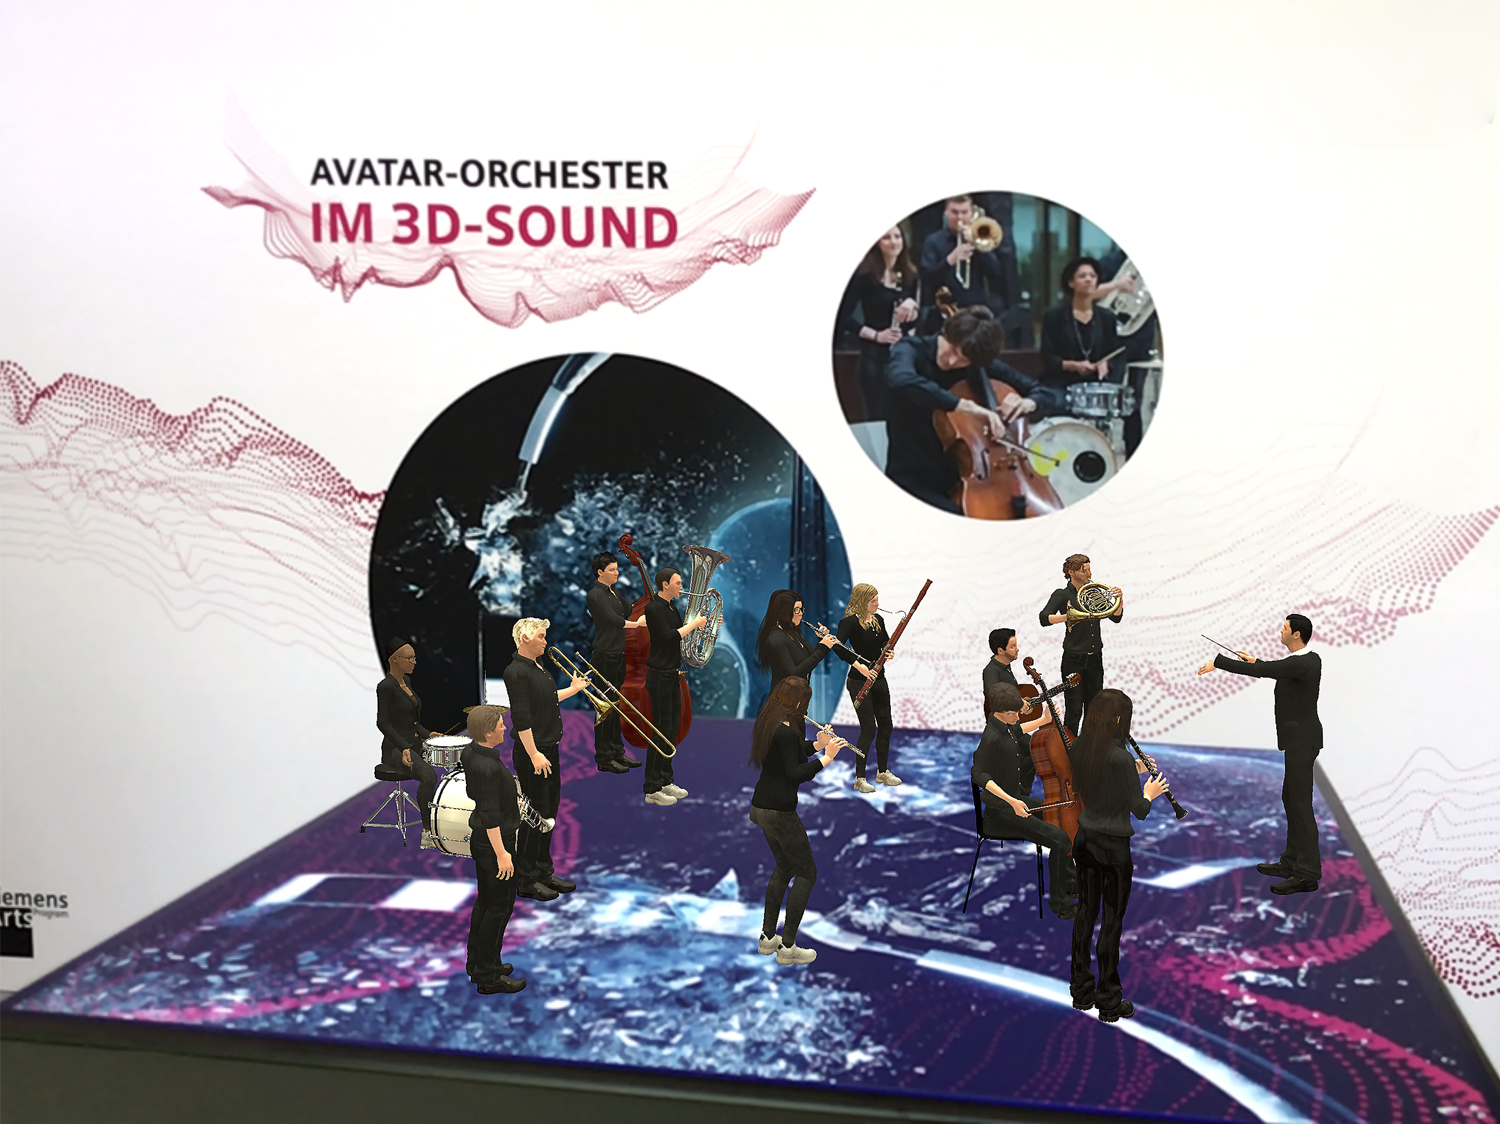 Das Avatar-Orchester des Siemens Arts Program revolutioniert die Art und Weise, in der wir ein Konzert erleben.